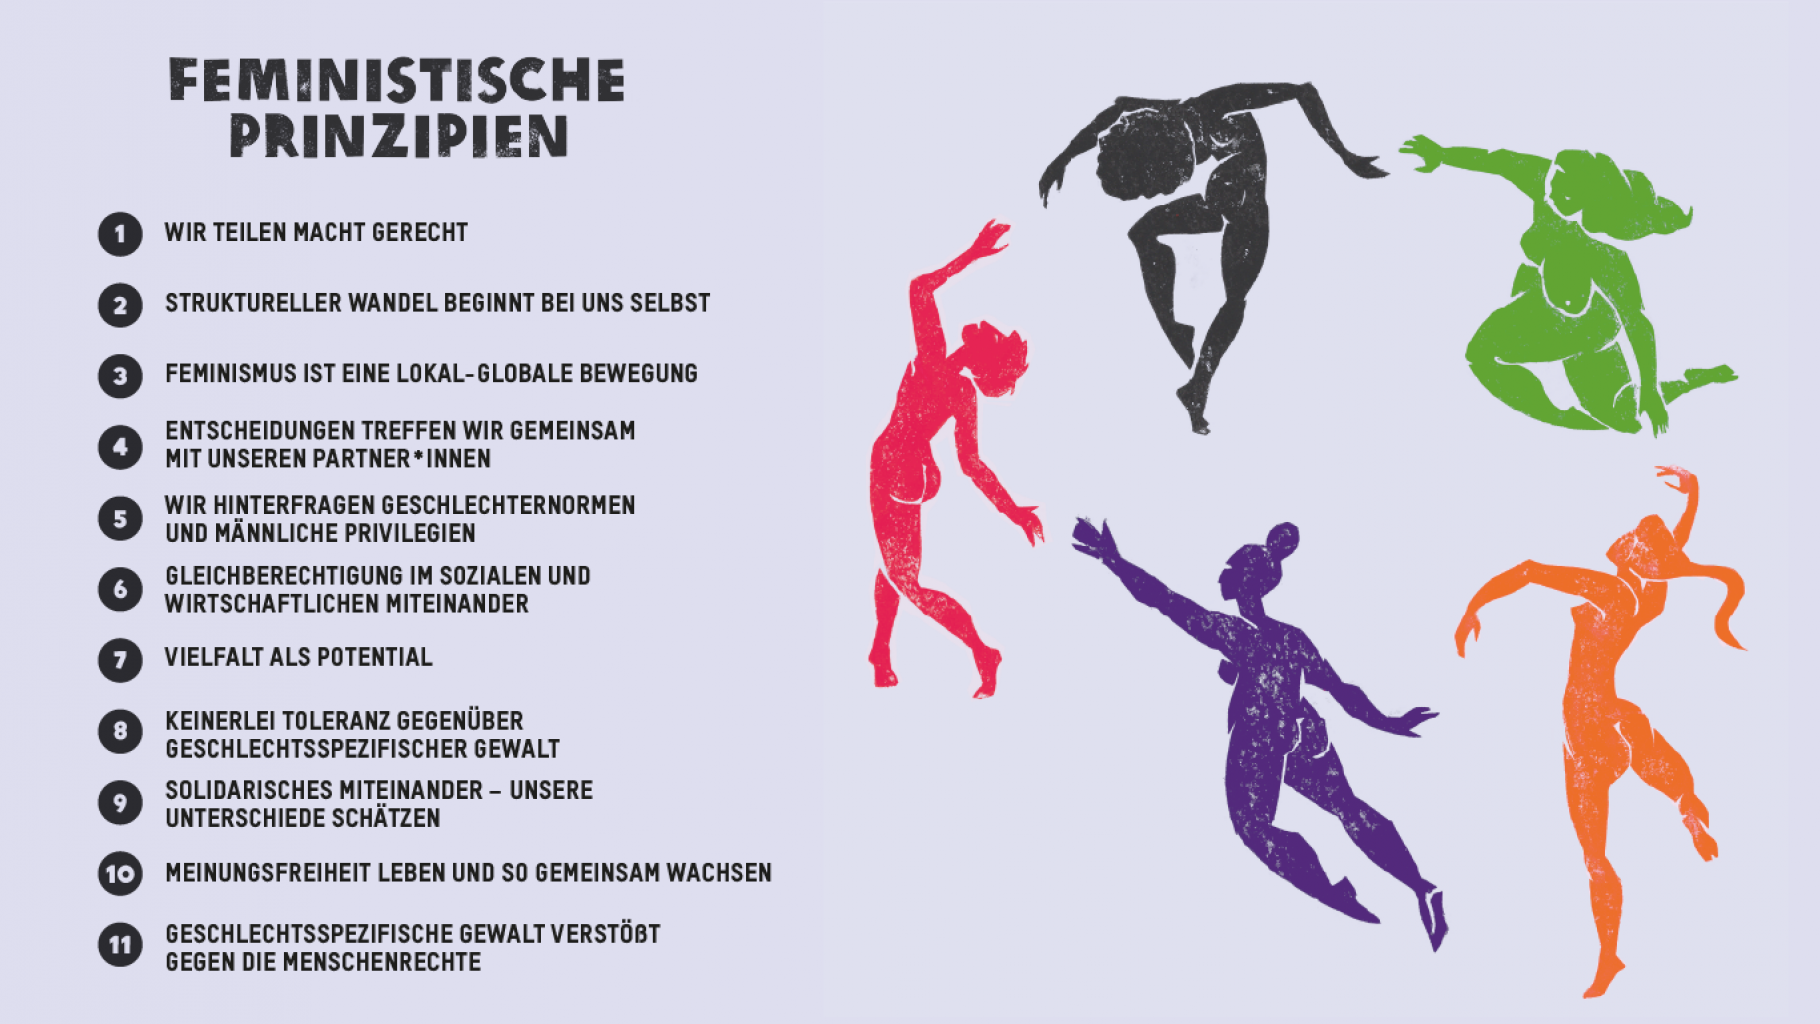 Darstellung von fünf unterschiedlich farbigen, etwas abstrakten menschlichen Körpern, die in einem Kreis schweben bzw. tanzen. Links ist ein Textblock mit den 11 Feministischen Prinzipien. 